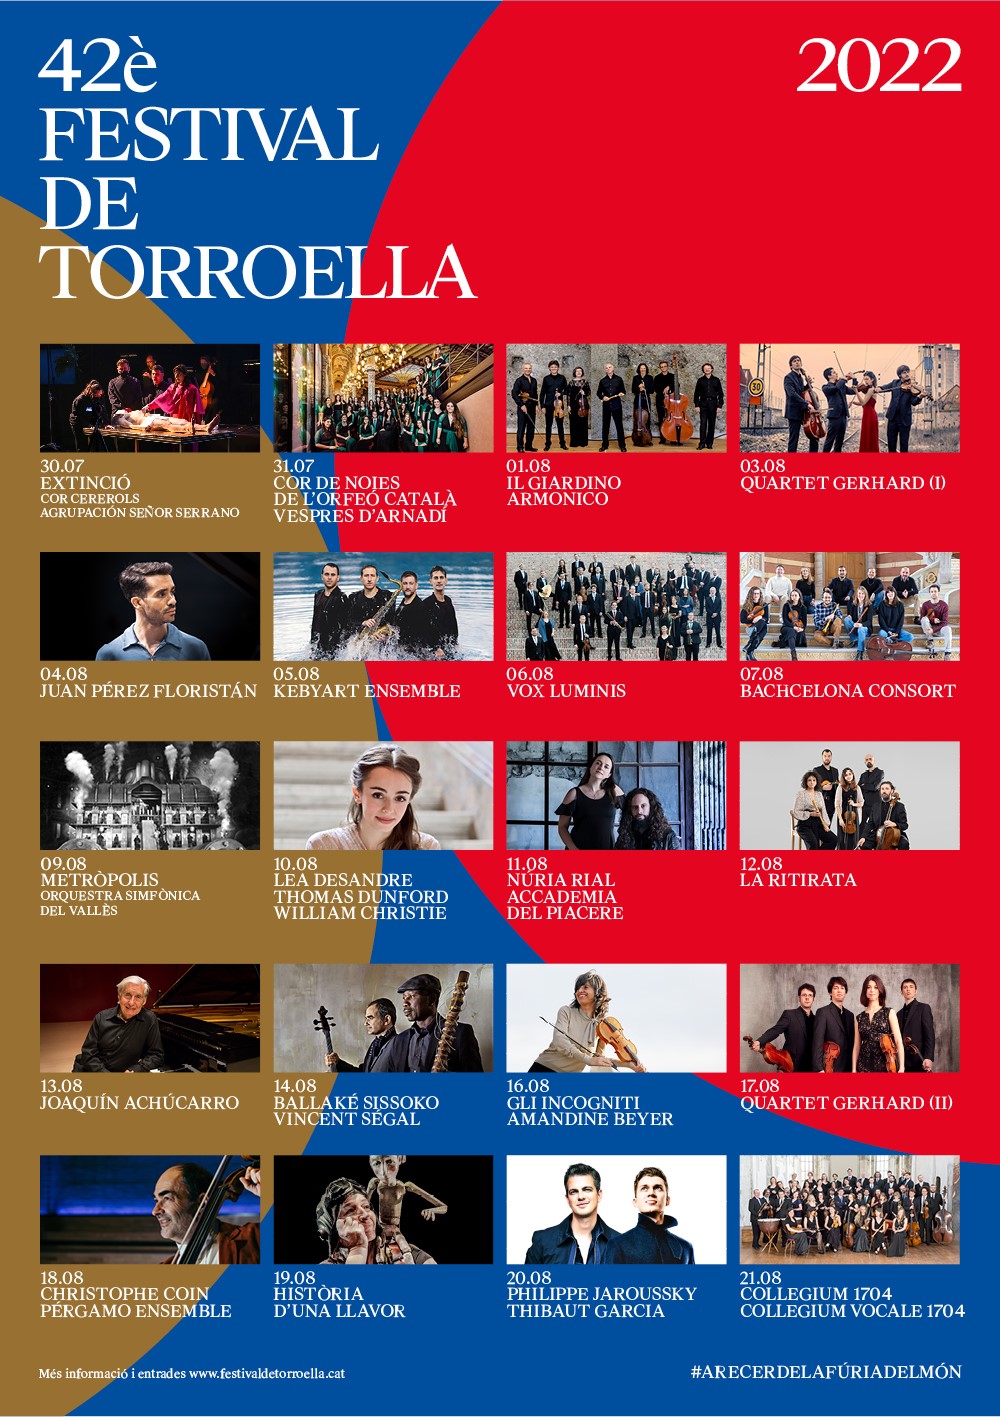 42è Festival de Torroella